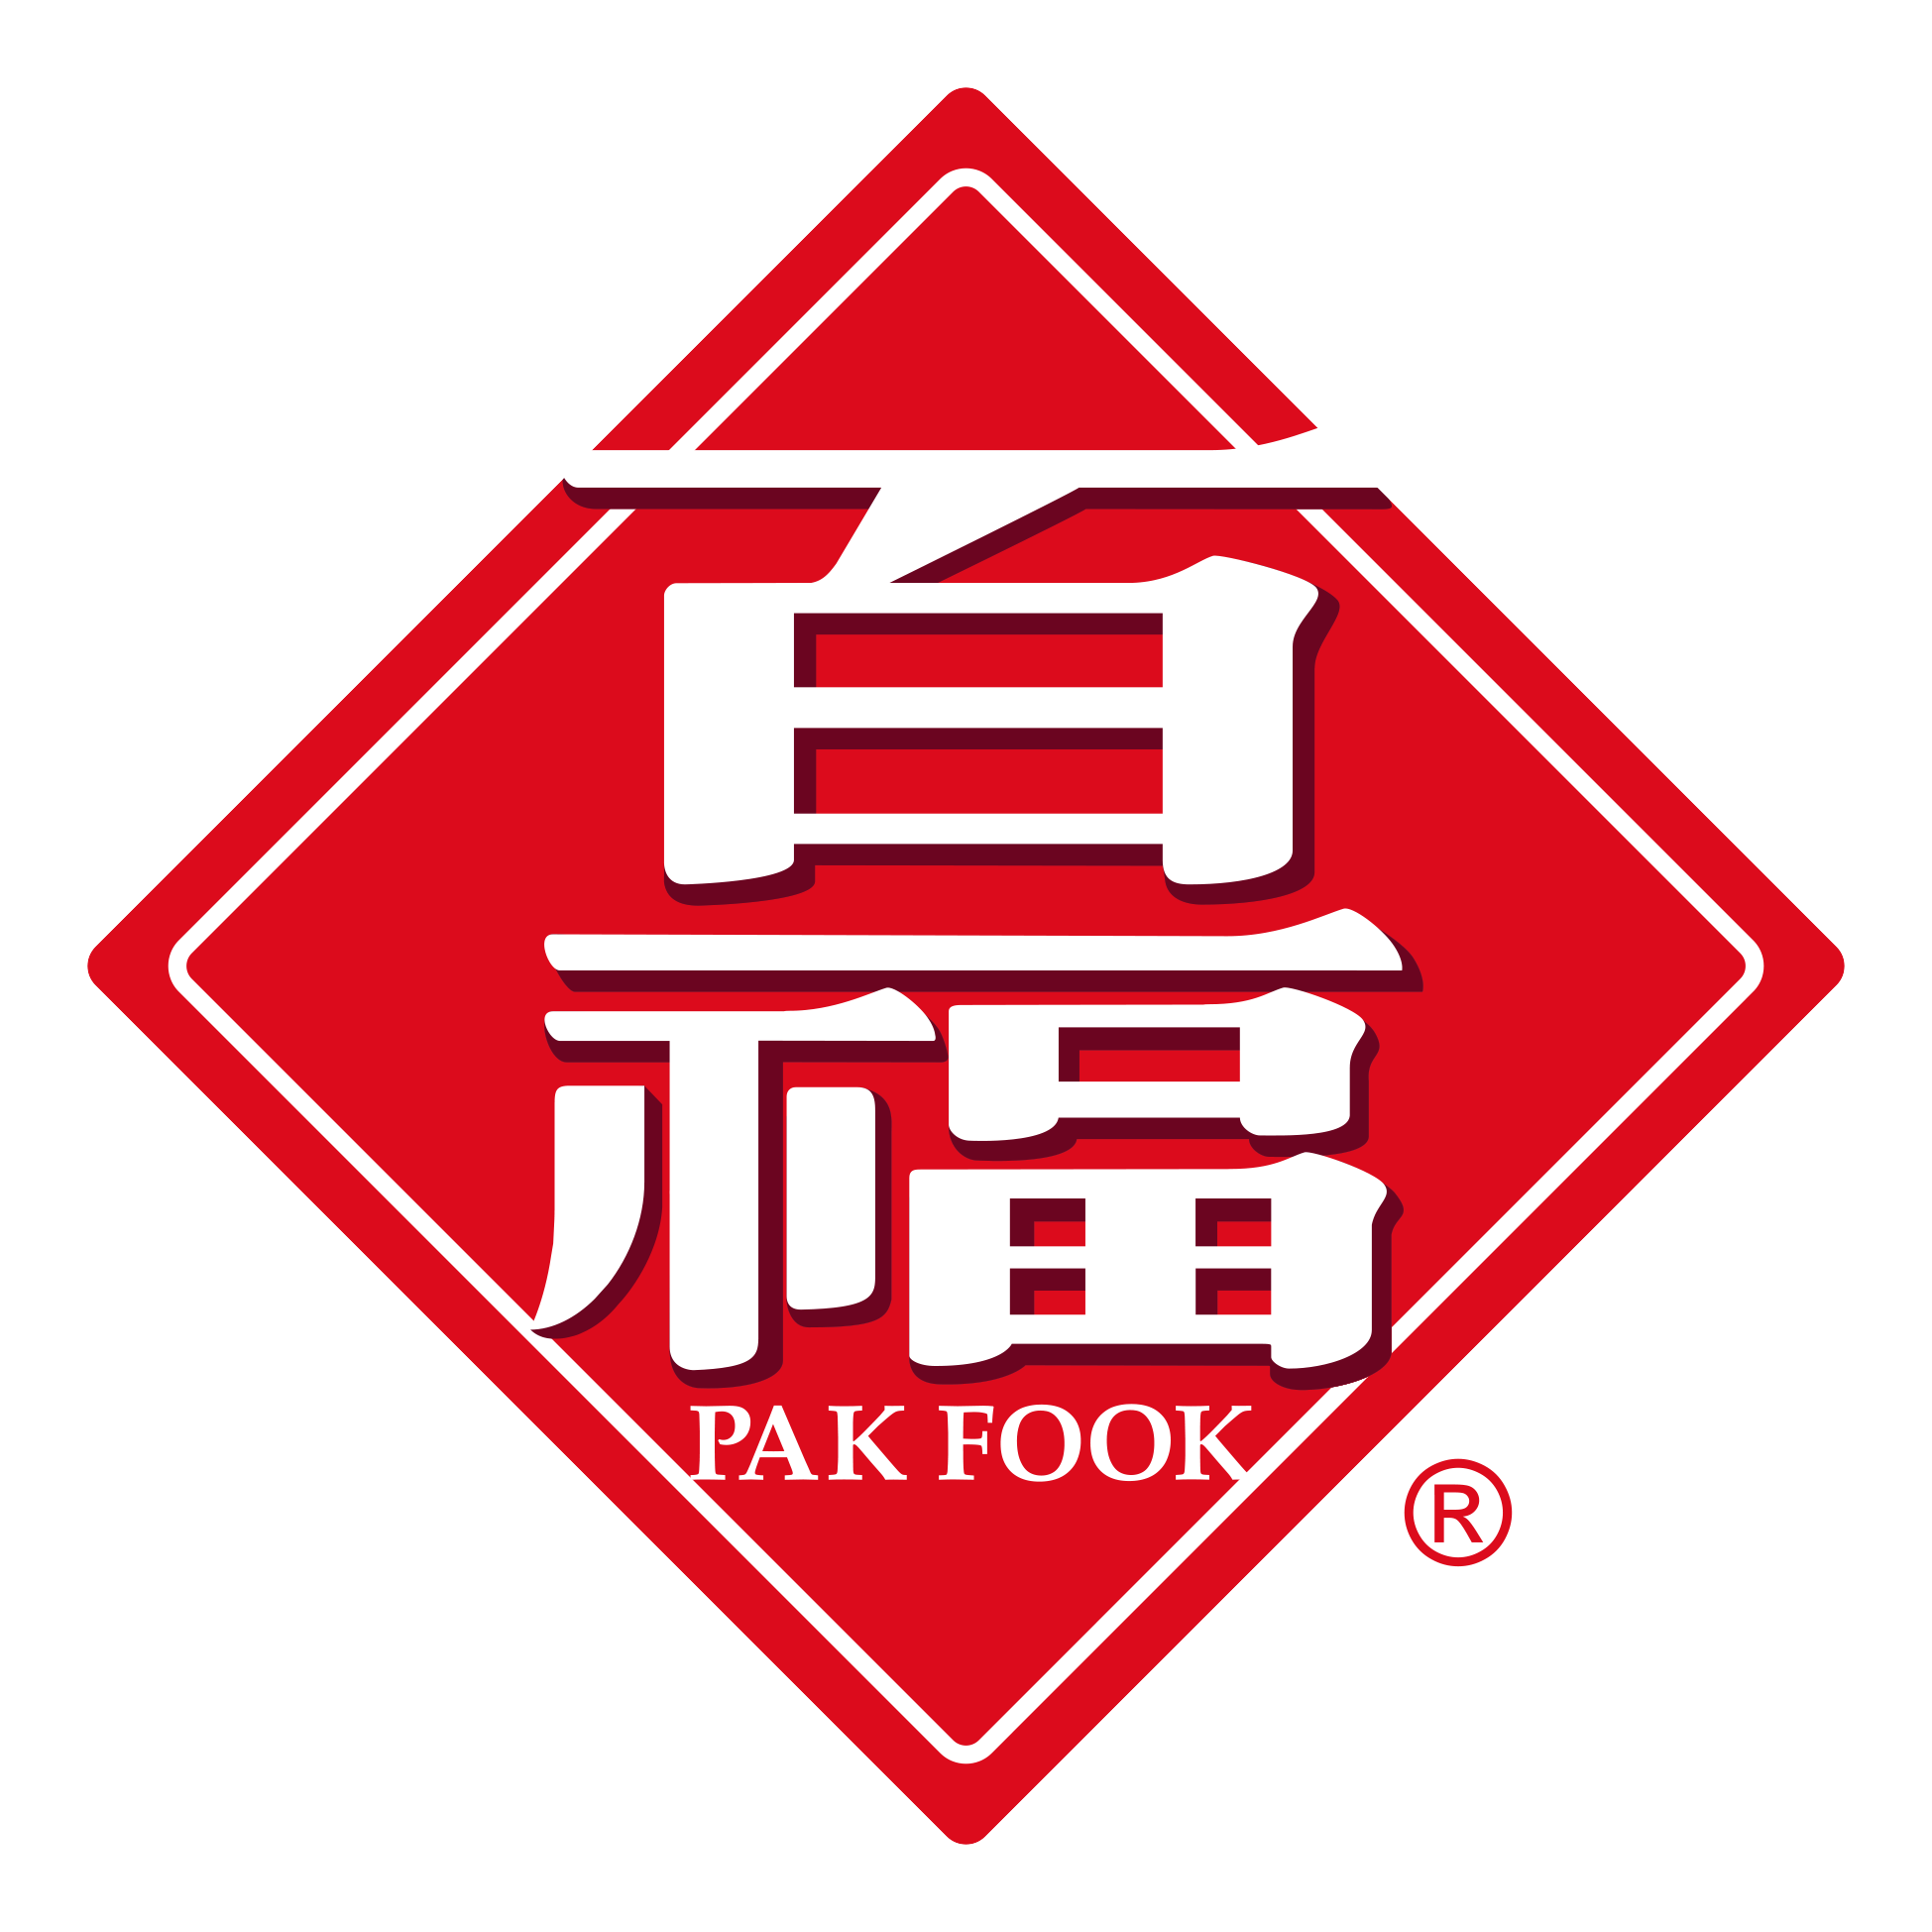 PakFook_R_Logo.png	